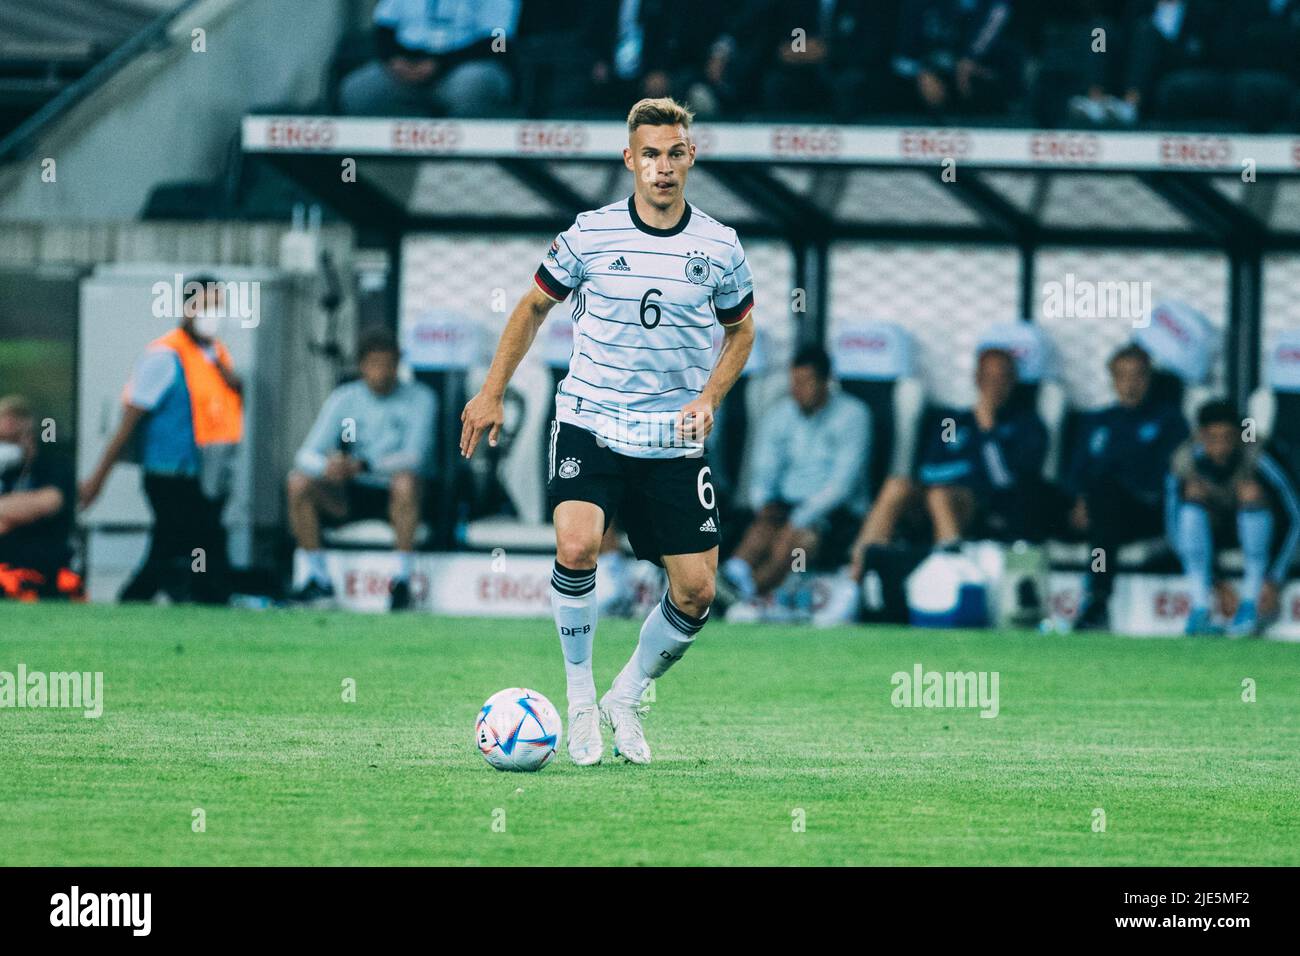 Mönchengladbach, Borussia-Park, 14.06.22: Joshua Kimmich (Germany) am Ball beim Länderspiel zwischen Deutschland vs. Italien.  Foto: pressefoto Mika V Stock Photo